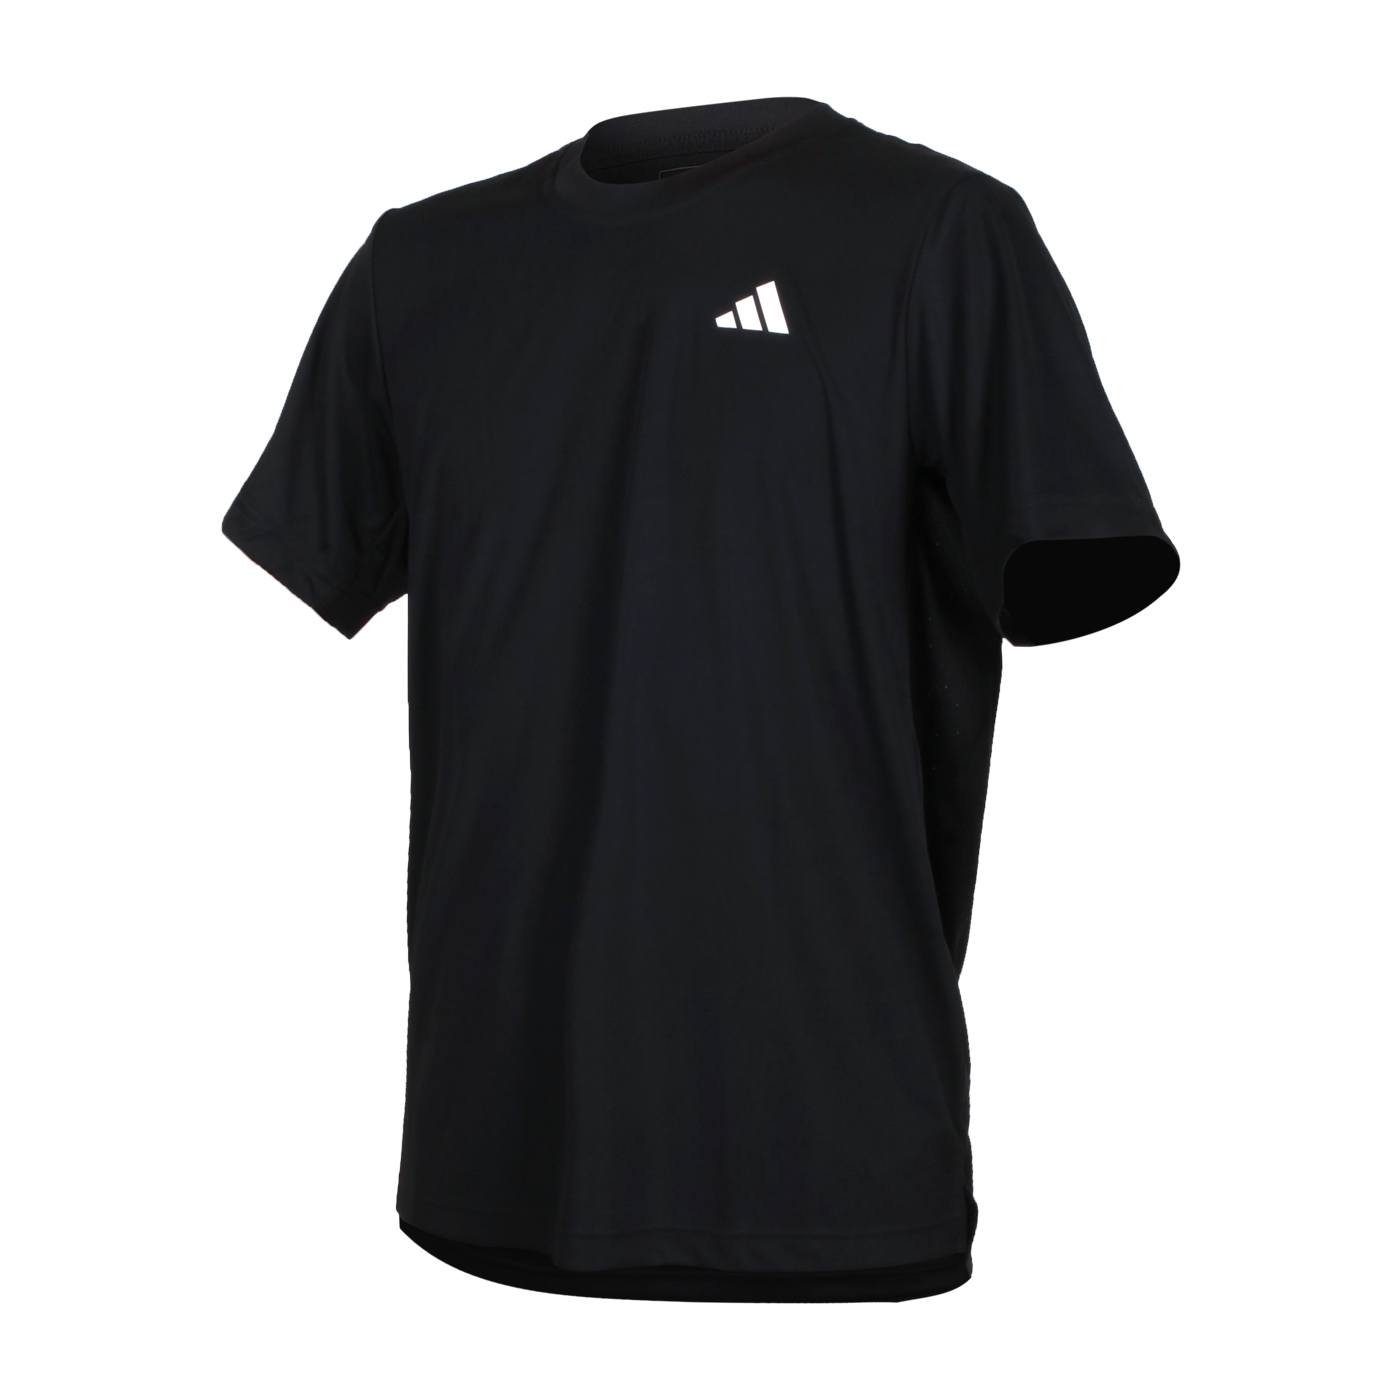 ADIDAS 男款短袖T恤  HS3275 - 黑白